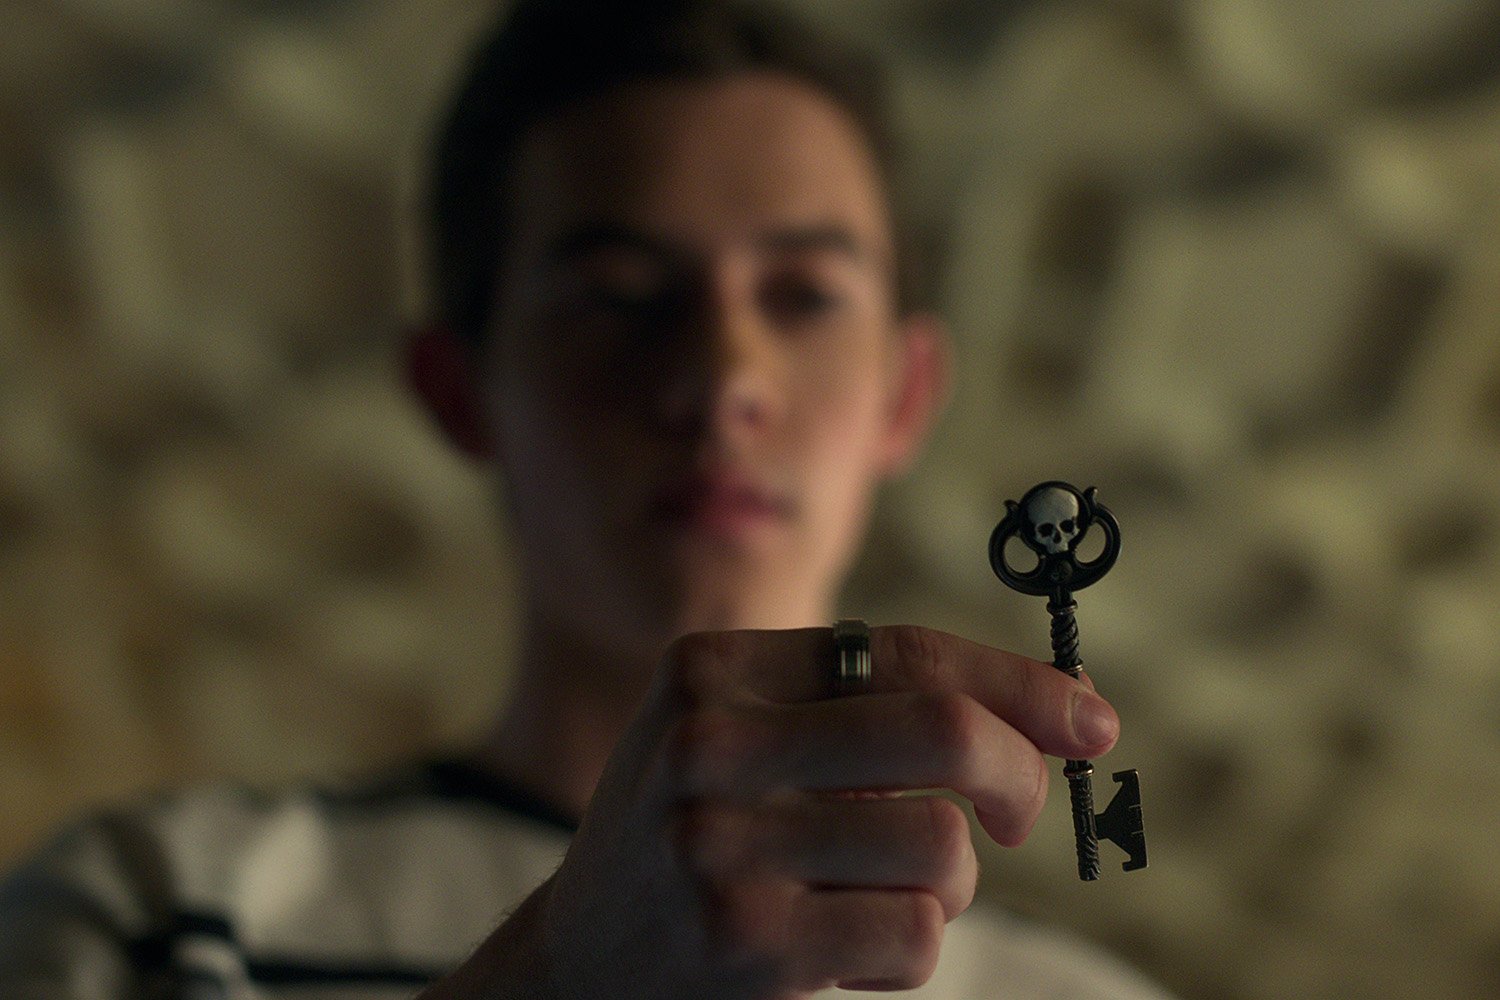 Griffin Gluck as Gabe holding a key in Locke & Key Season 2.